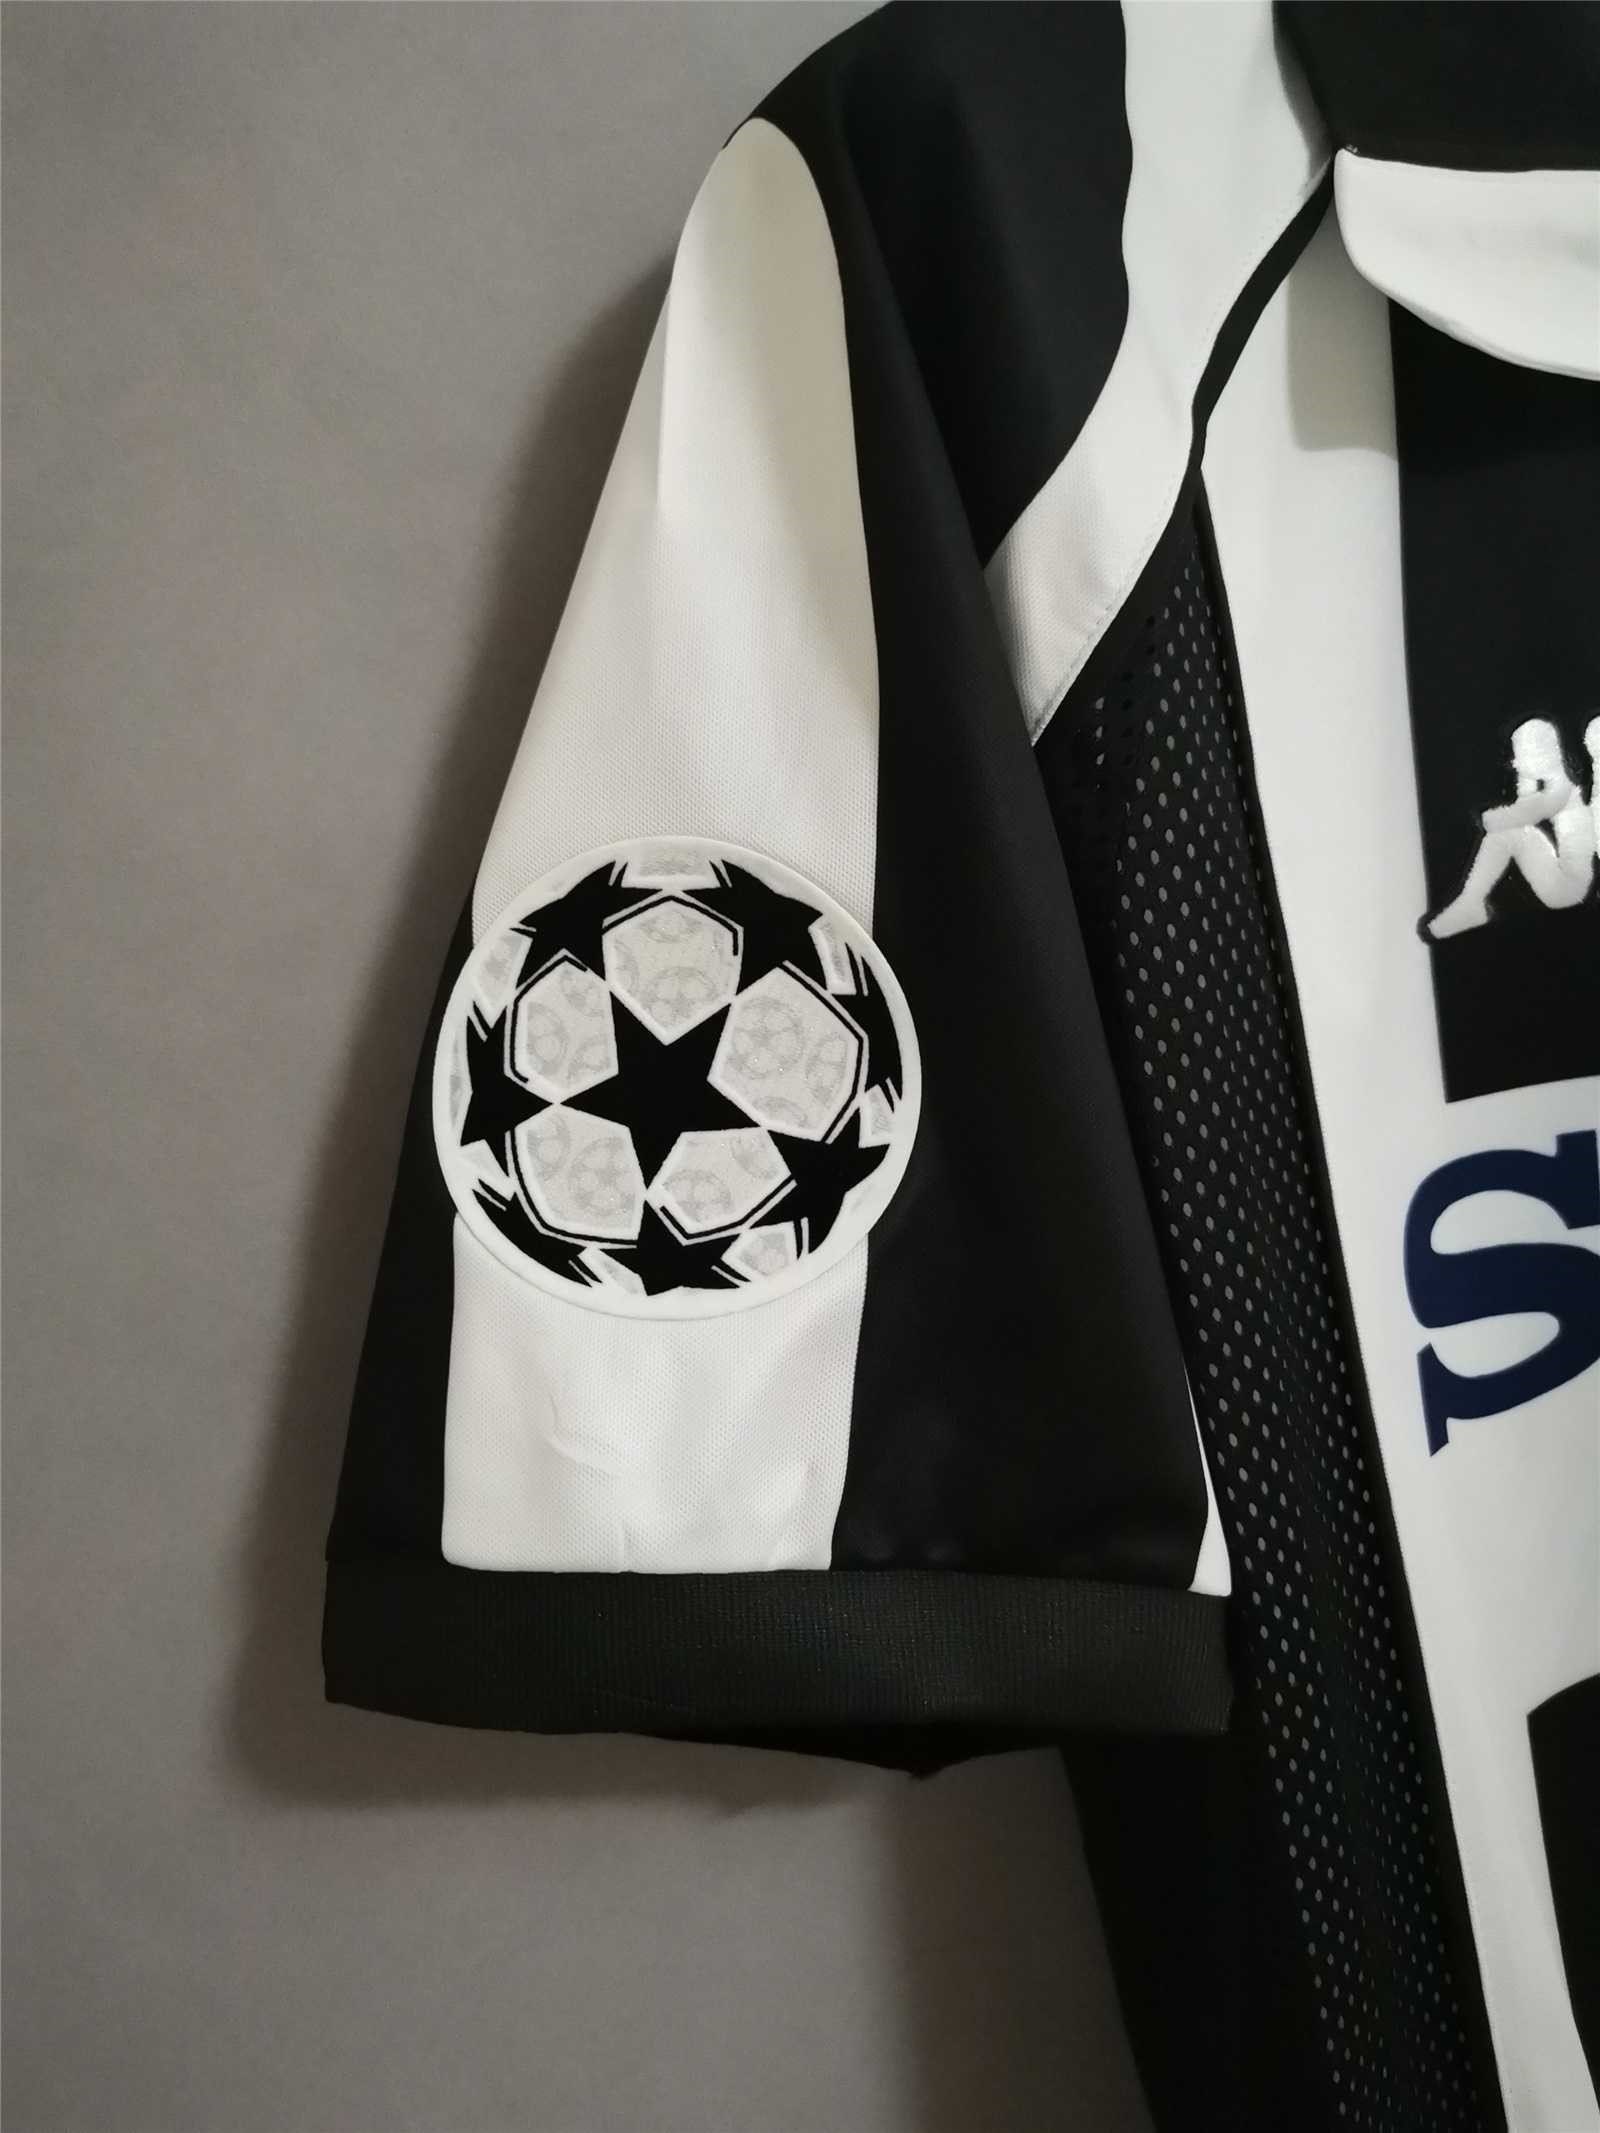 CA Juventus 1998 Away Kit